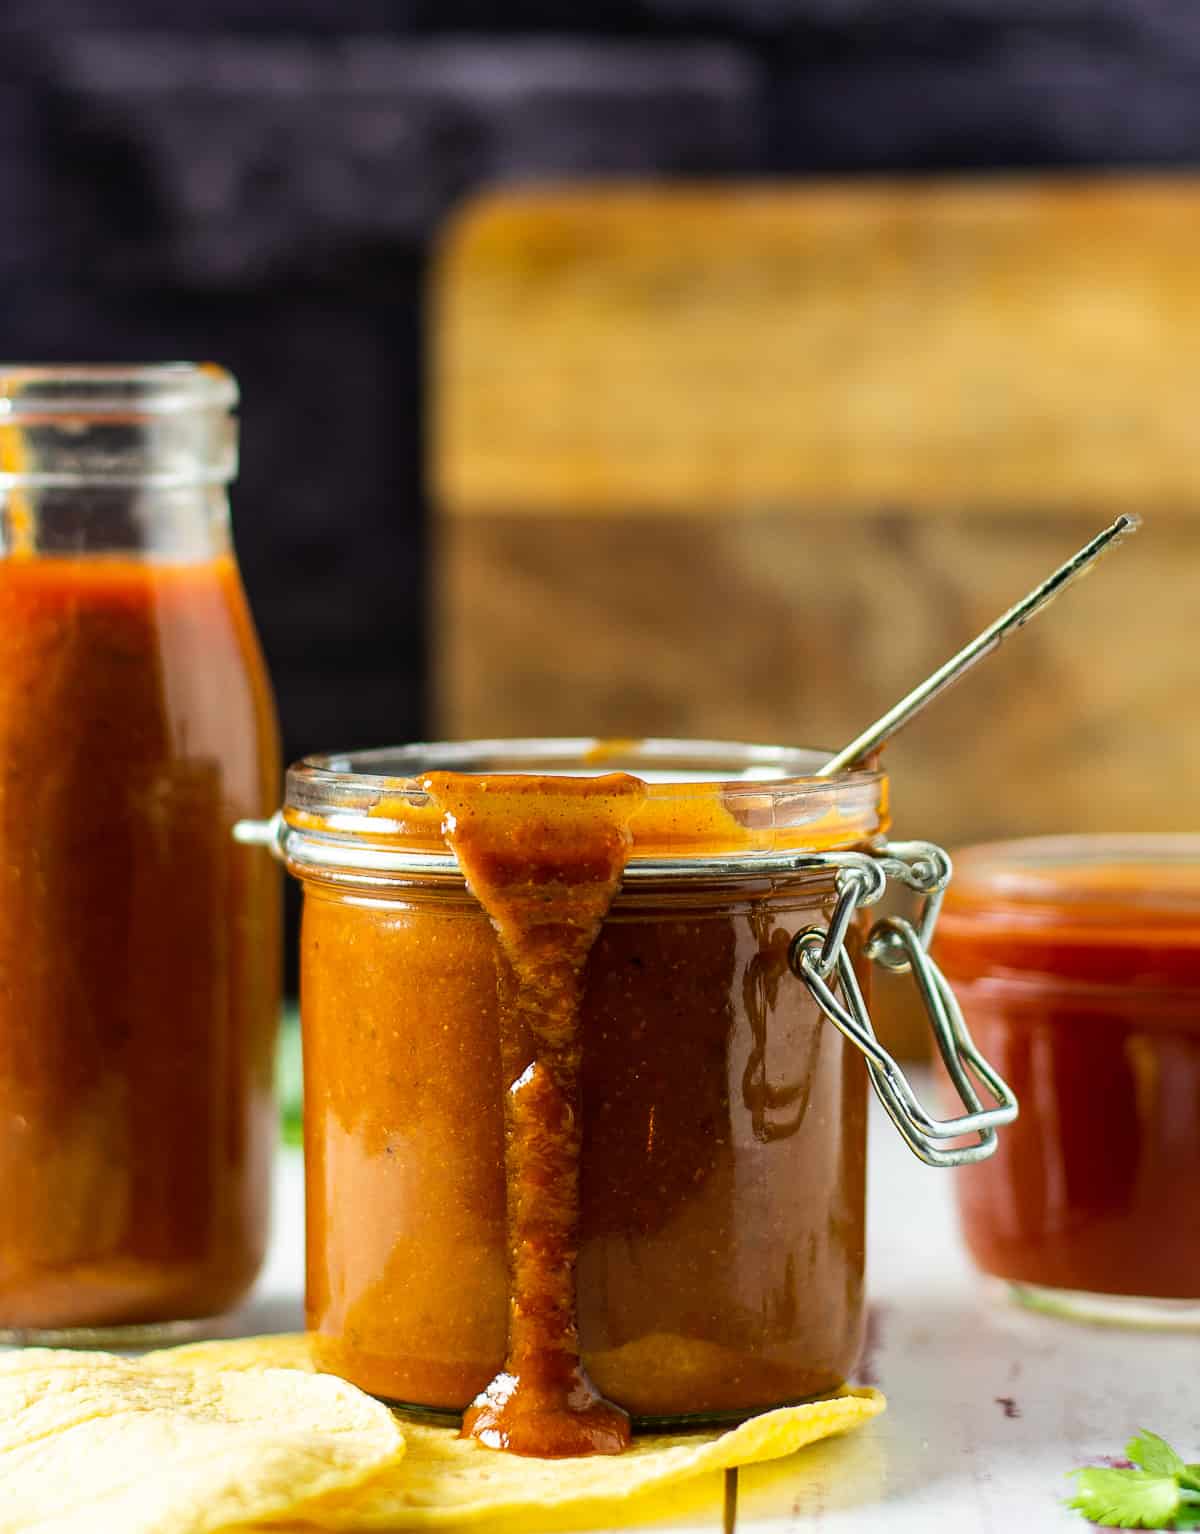 vegan enchilada sauce in glass jar.